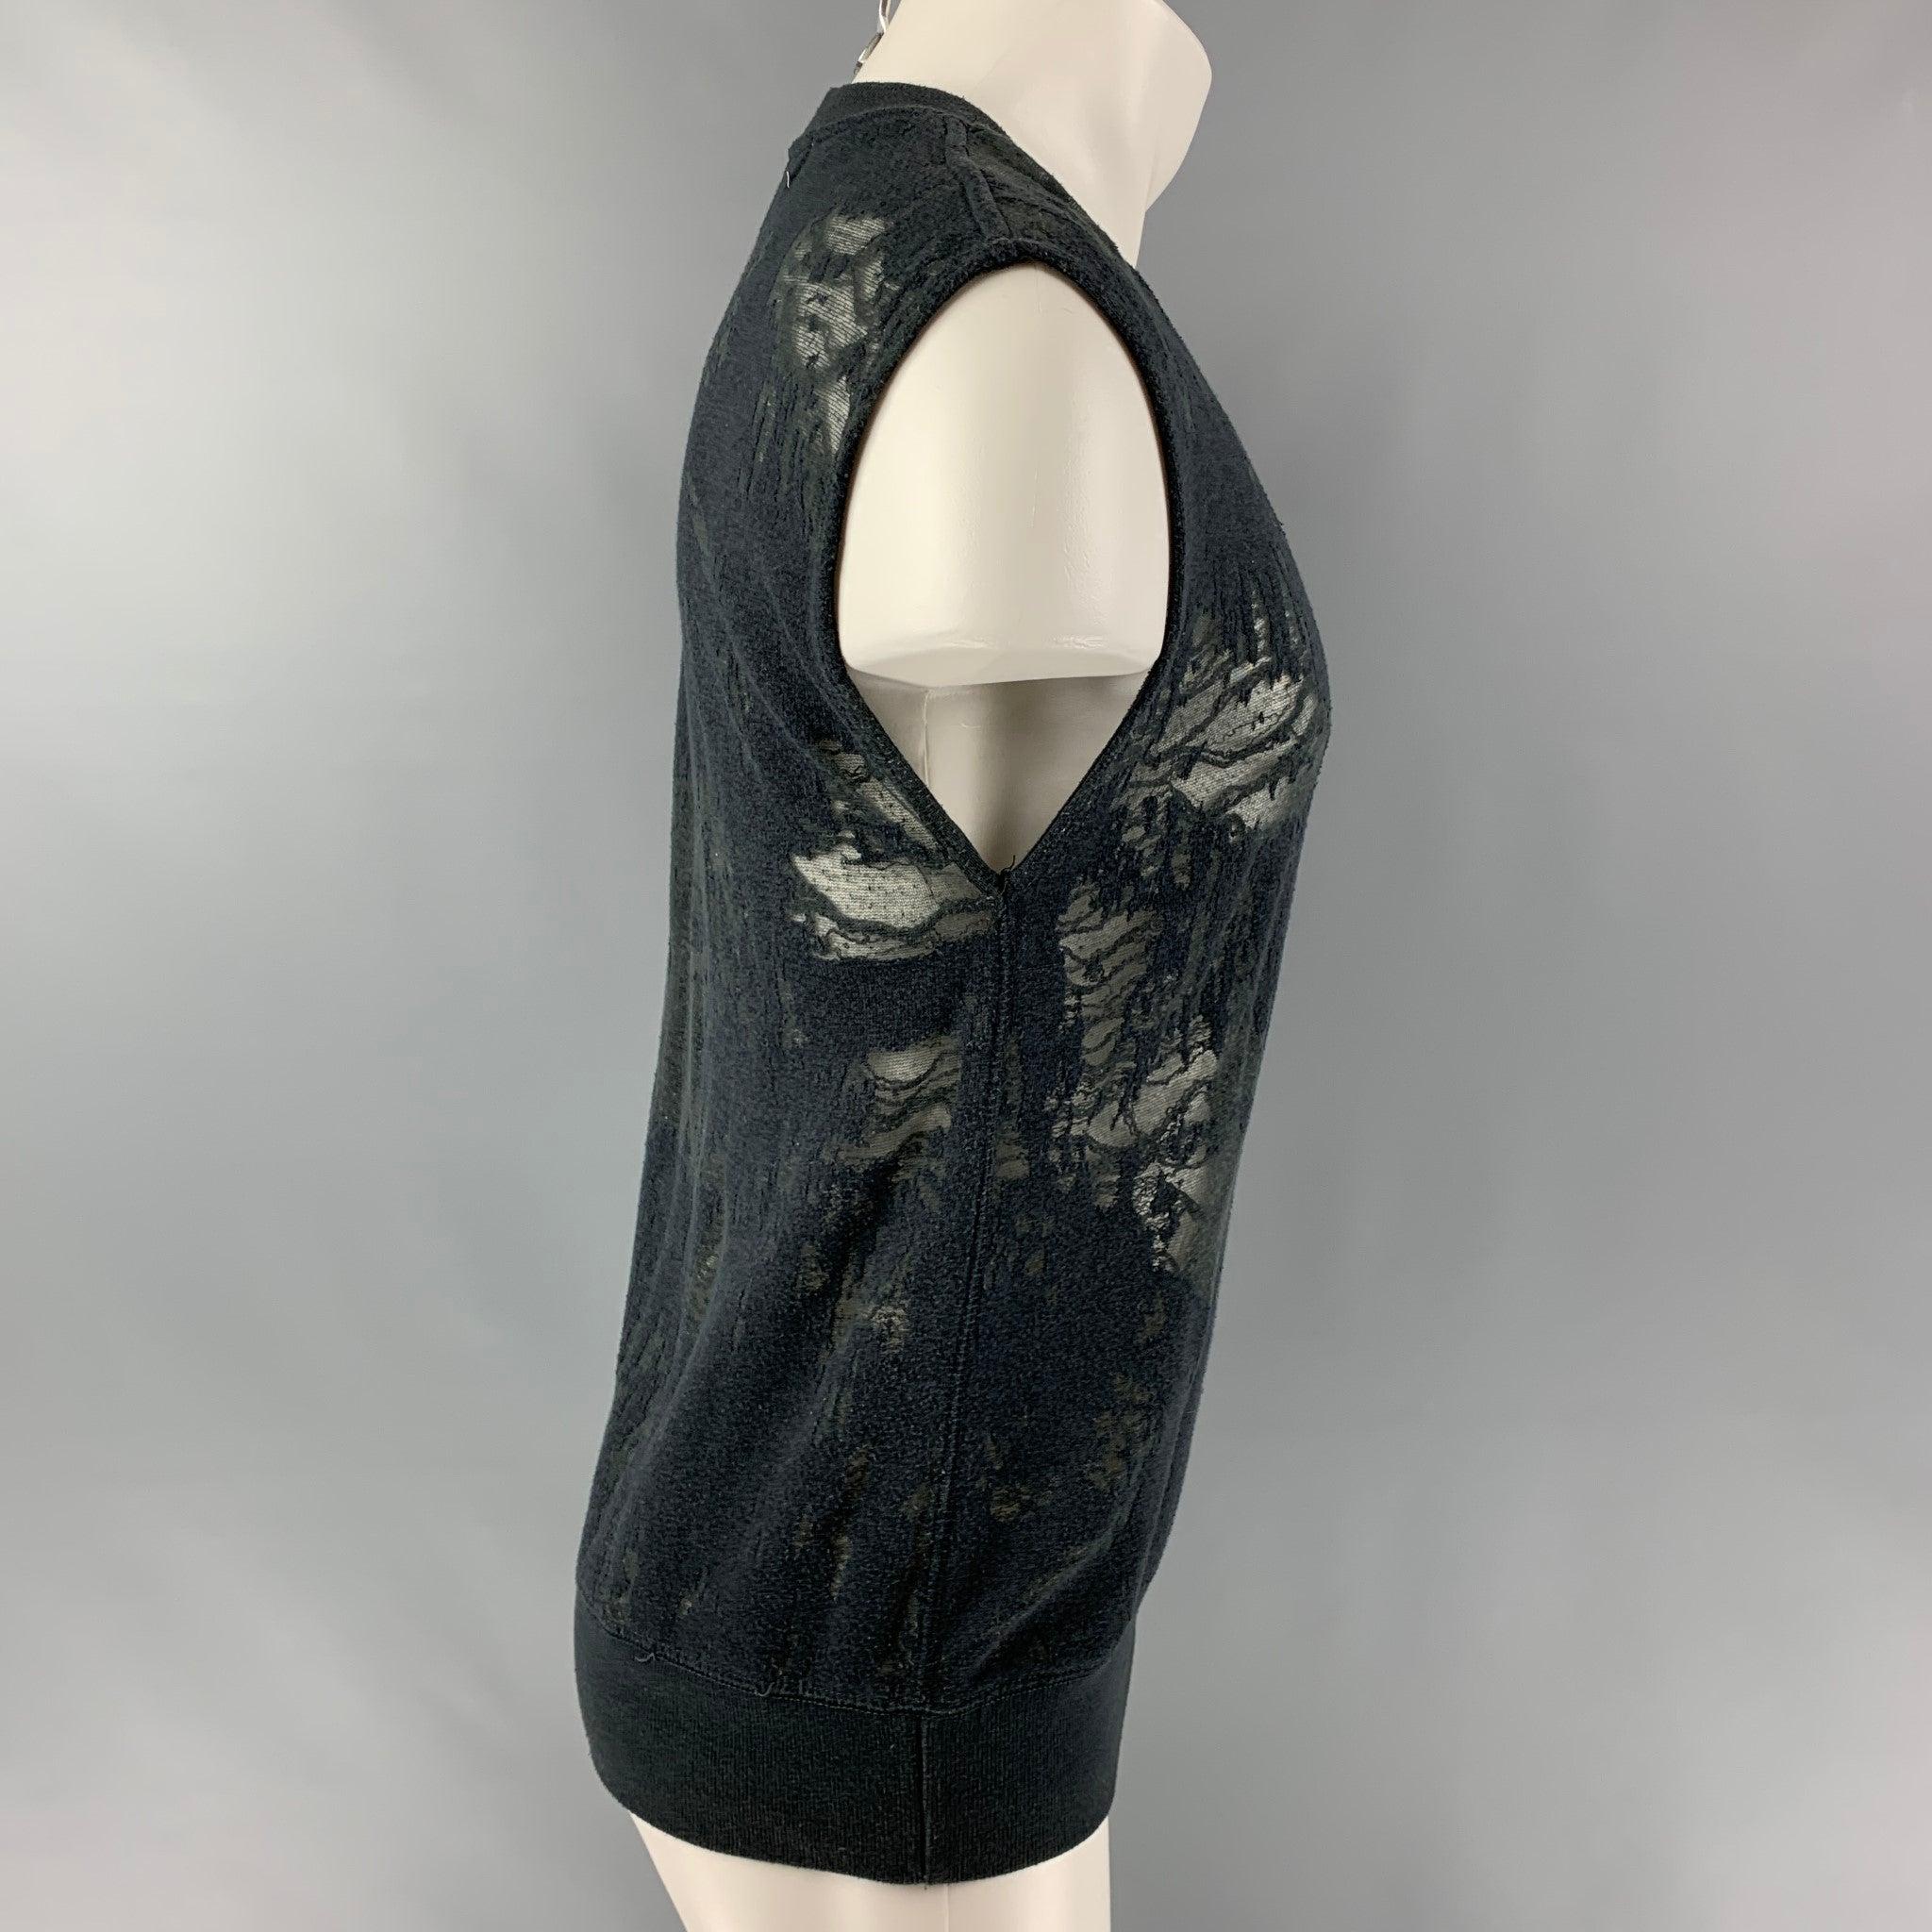 Le pull-over sans manches Nuala d'IRO JEANS est réalisé en jersey de coton mélangé gris ardoise partiellement transparent. Il présente un style vieilli et une encolure ras-du-cou. Excellent état d'origine.  

Marqué :   S 

Mesures : 
 
Epaule : 21